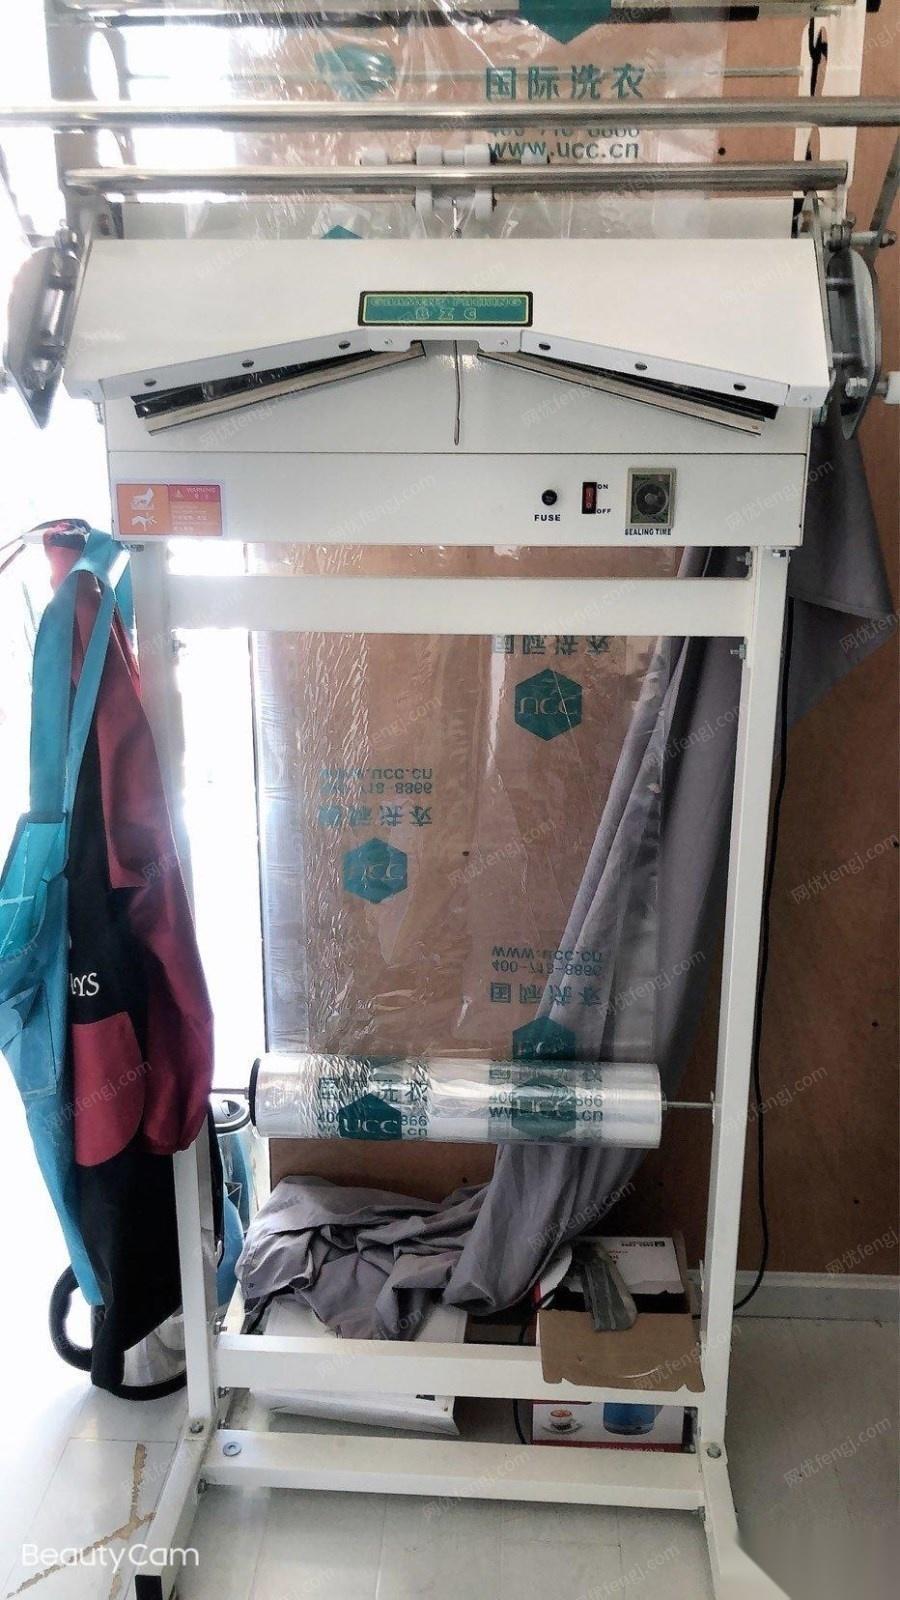 西藏拉萨因本人家中有事出售闲置干洗店设备一套